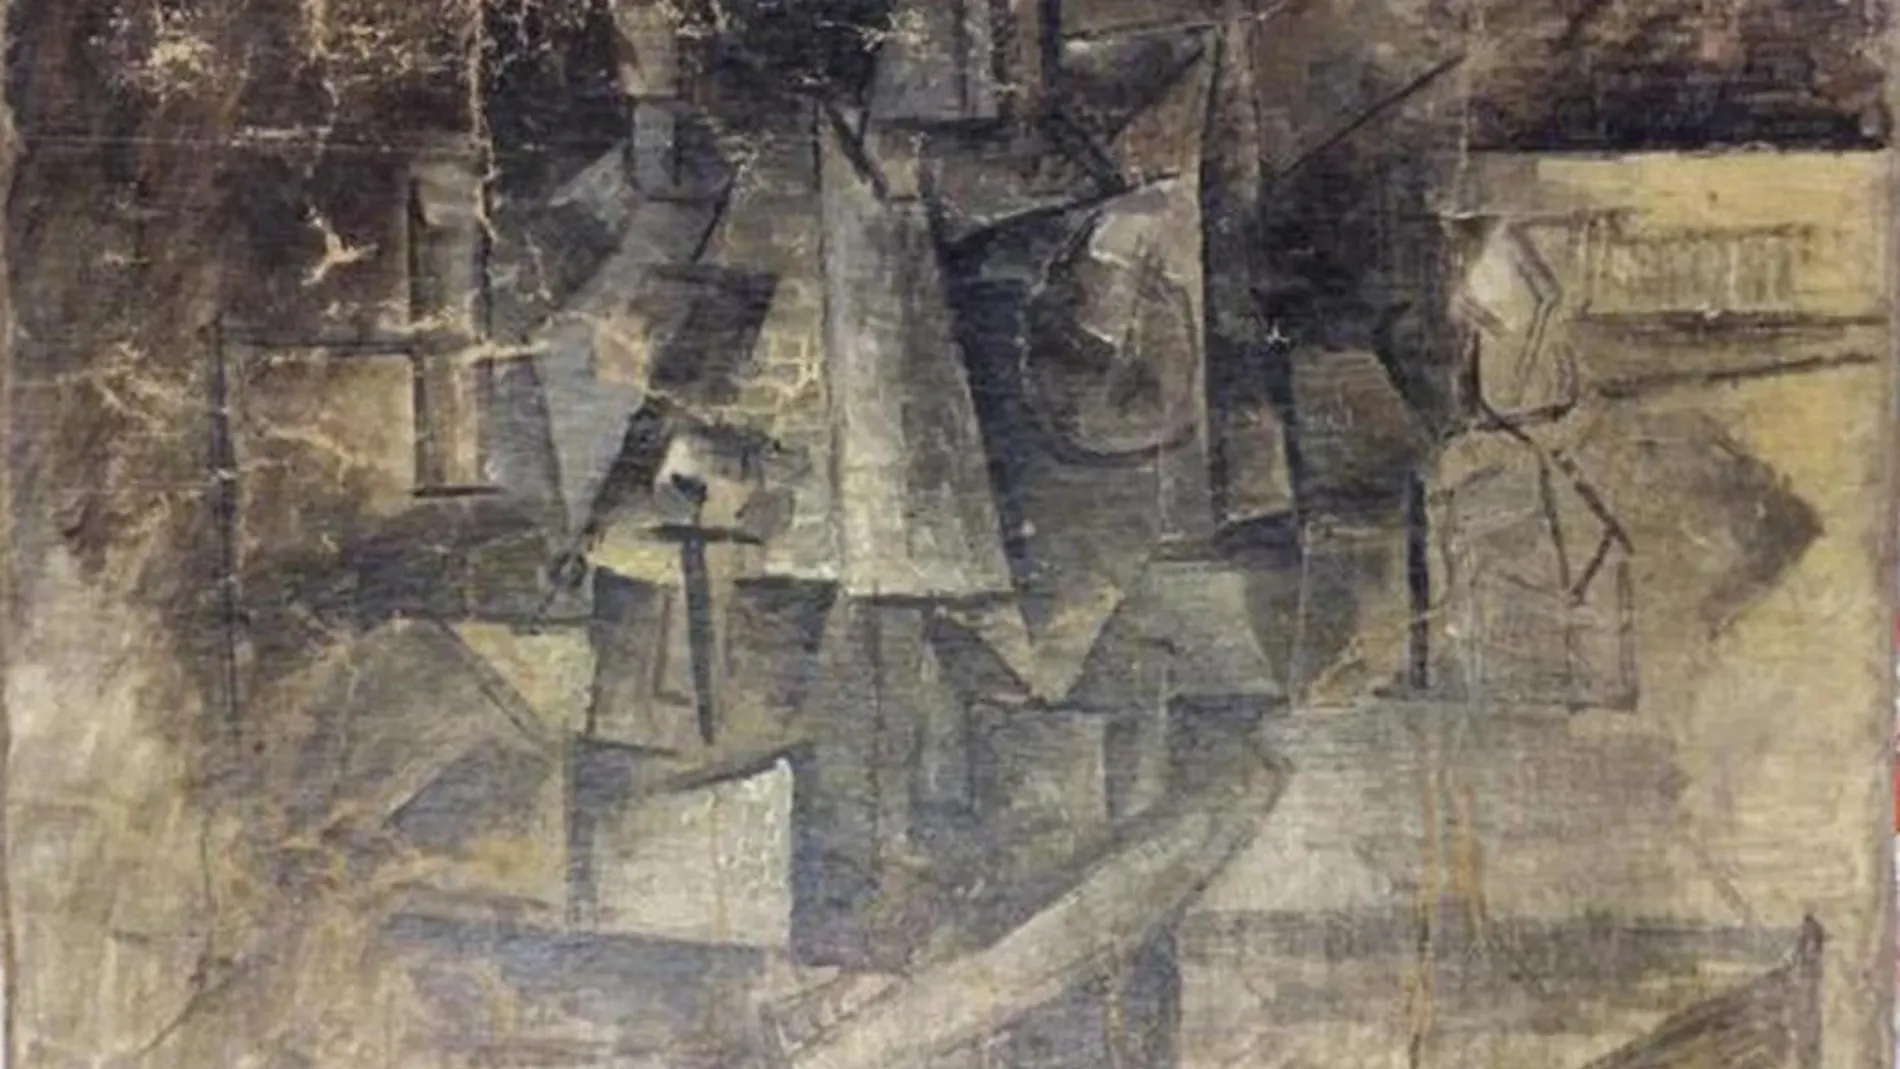 El cuadro de Picasso ‘La Coiffeuse’, robado hace 10 años en París